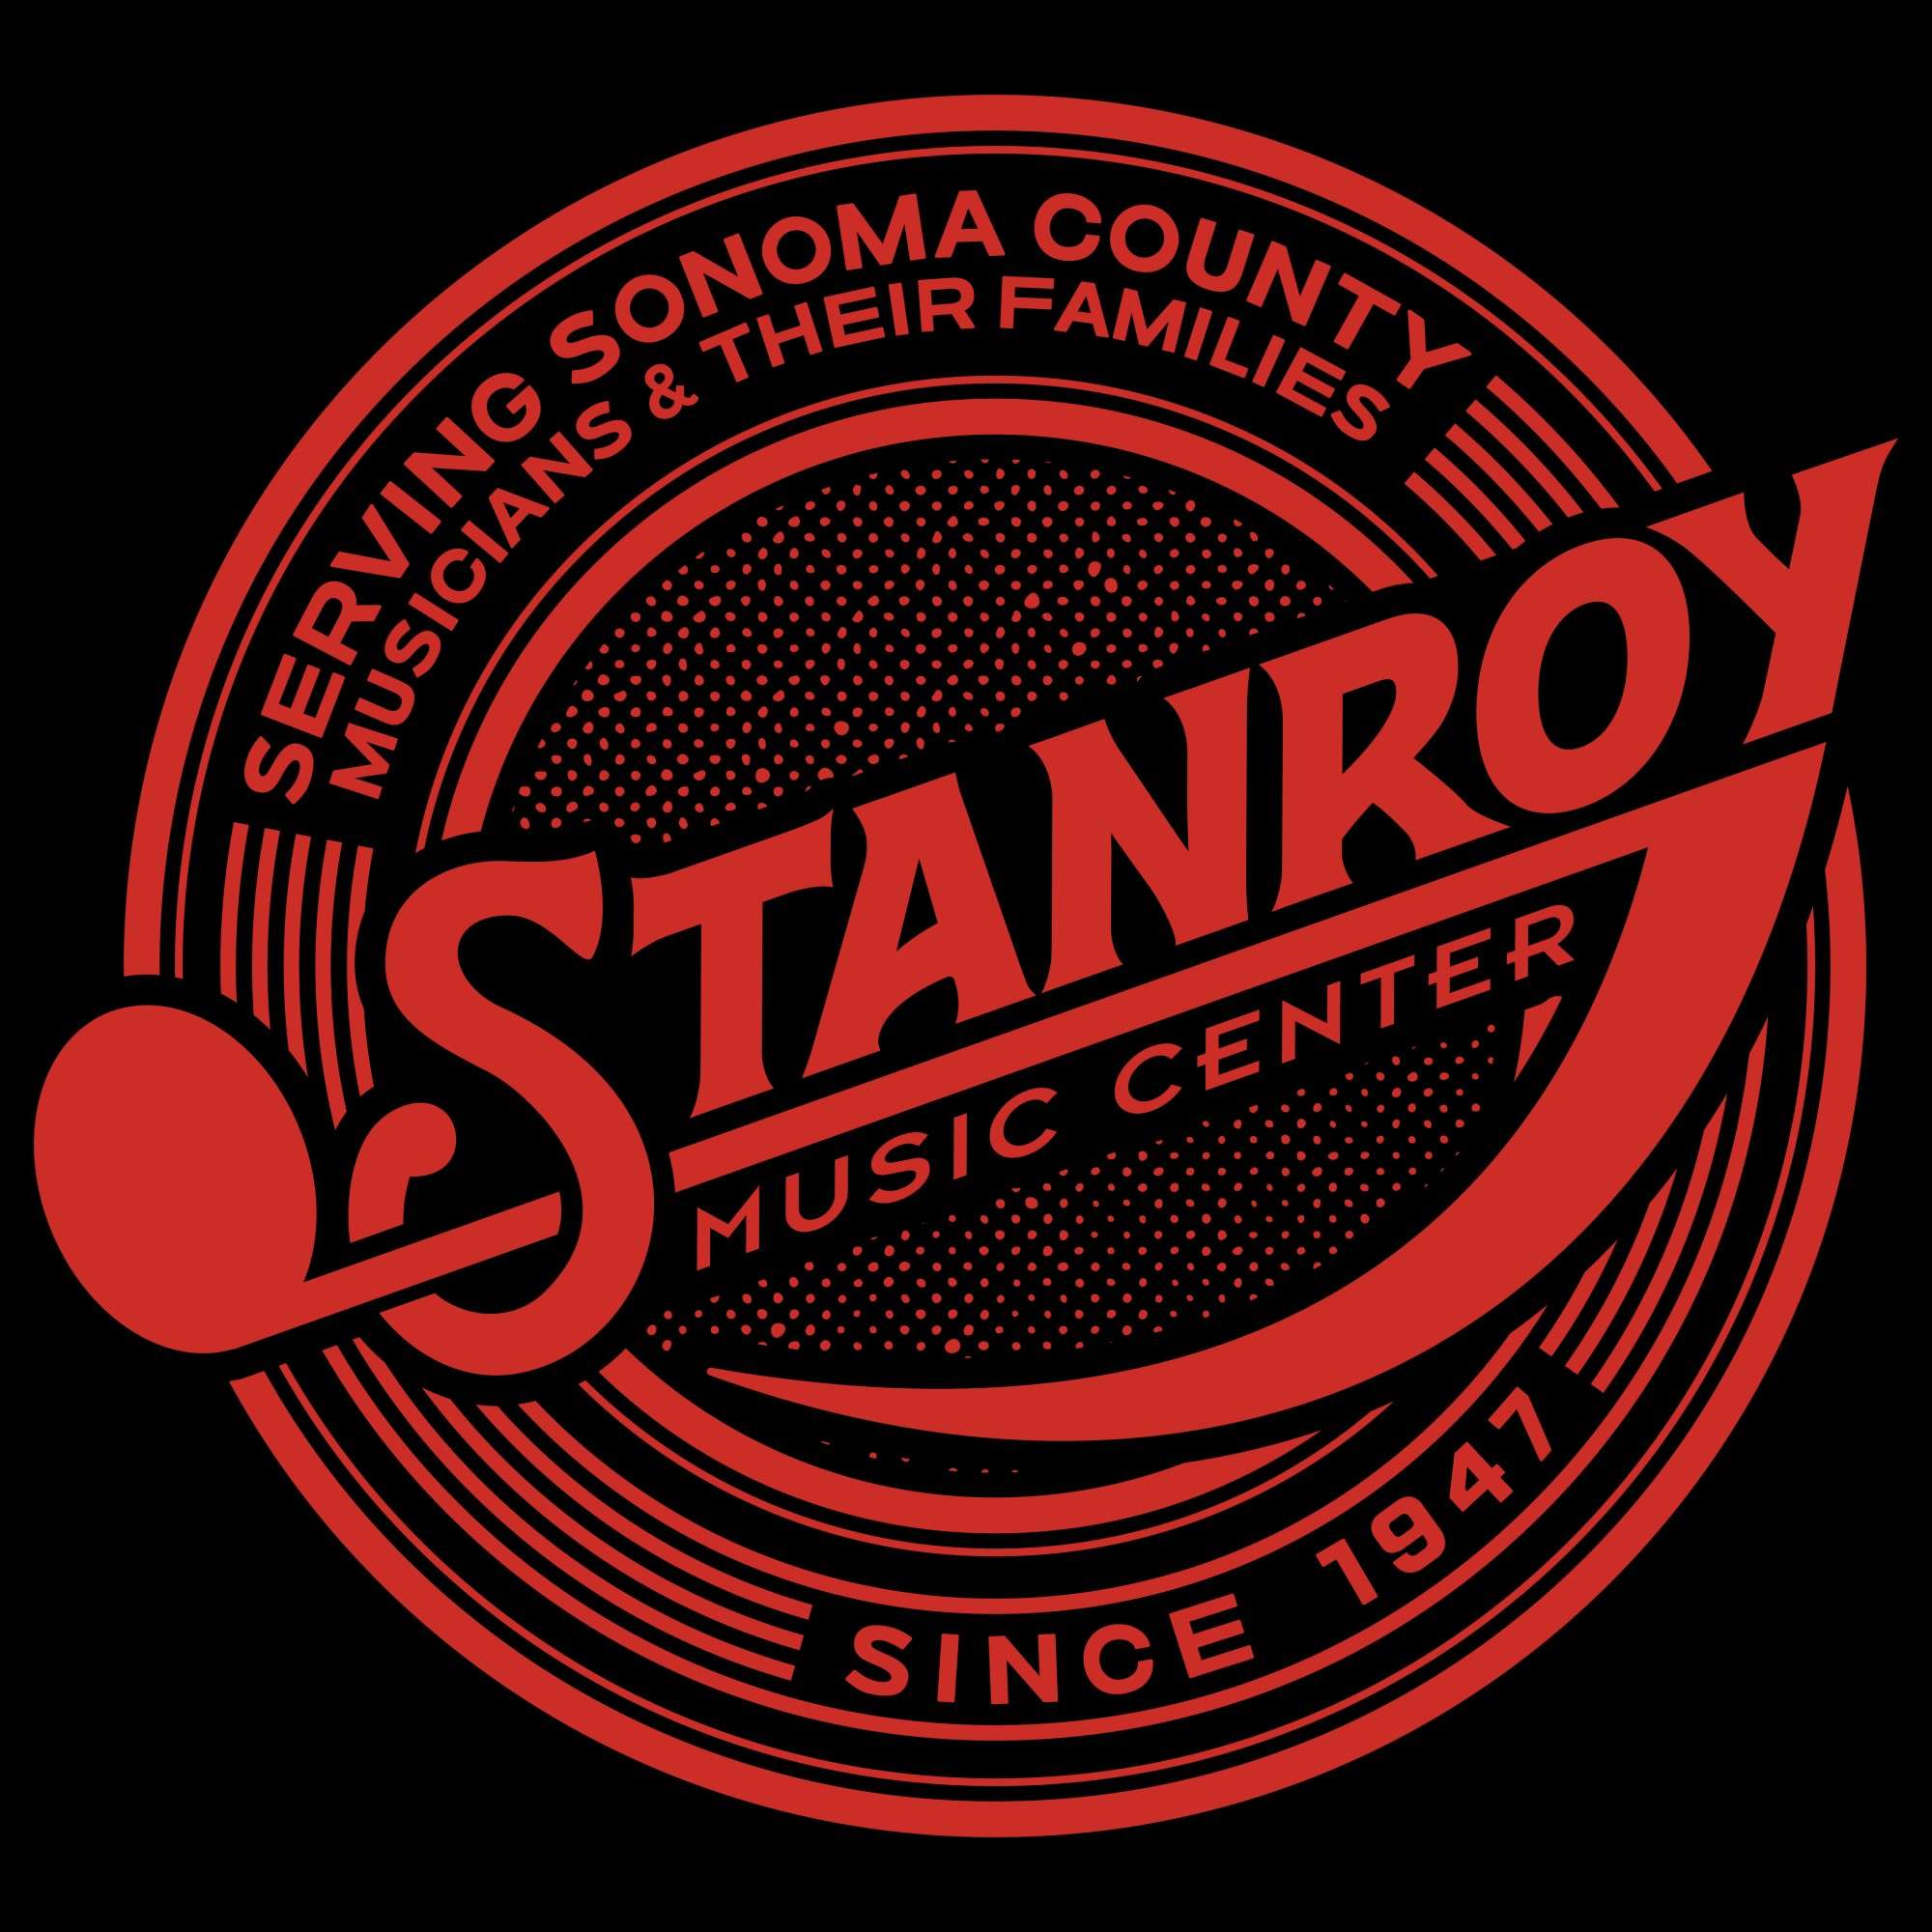 Stanroy Music Center Logo